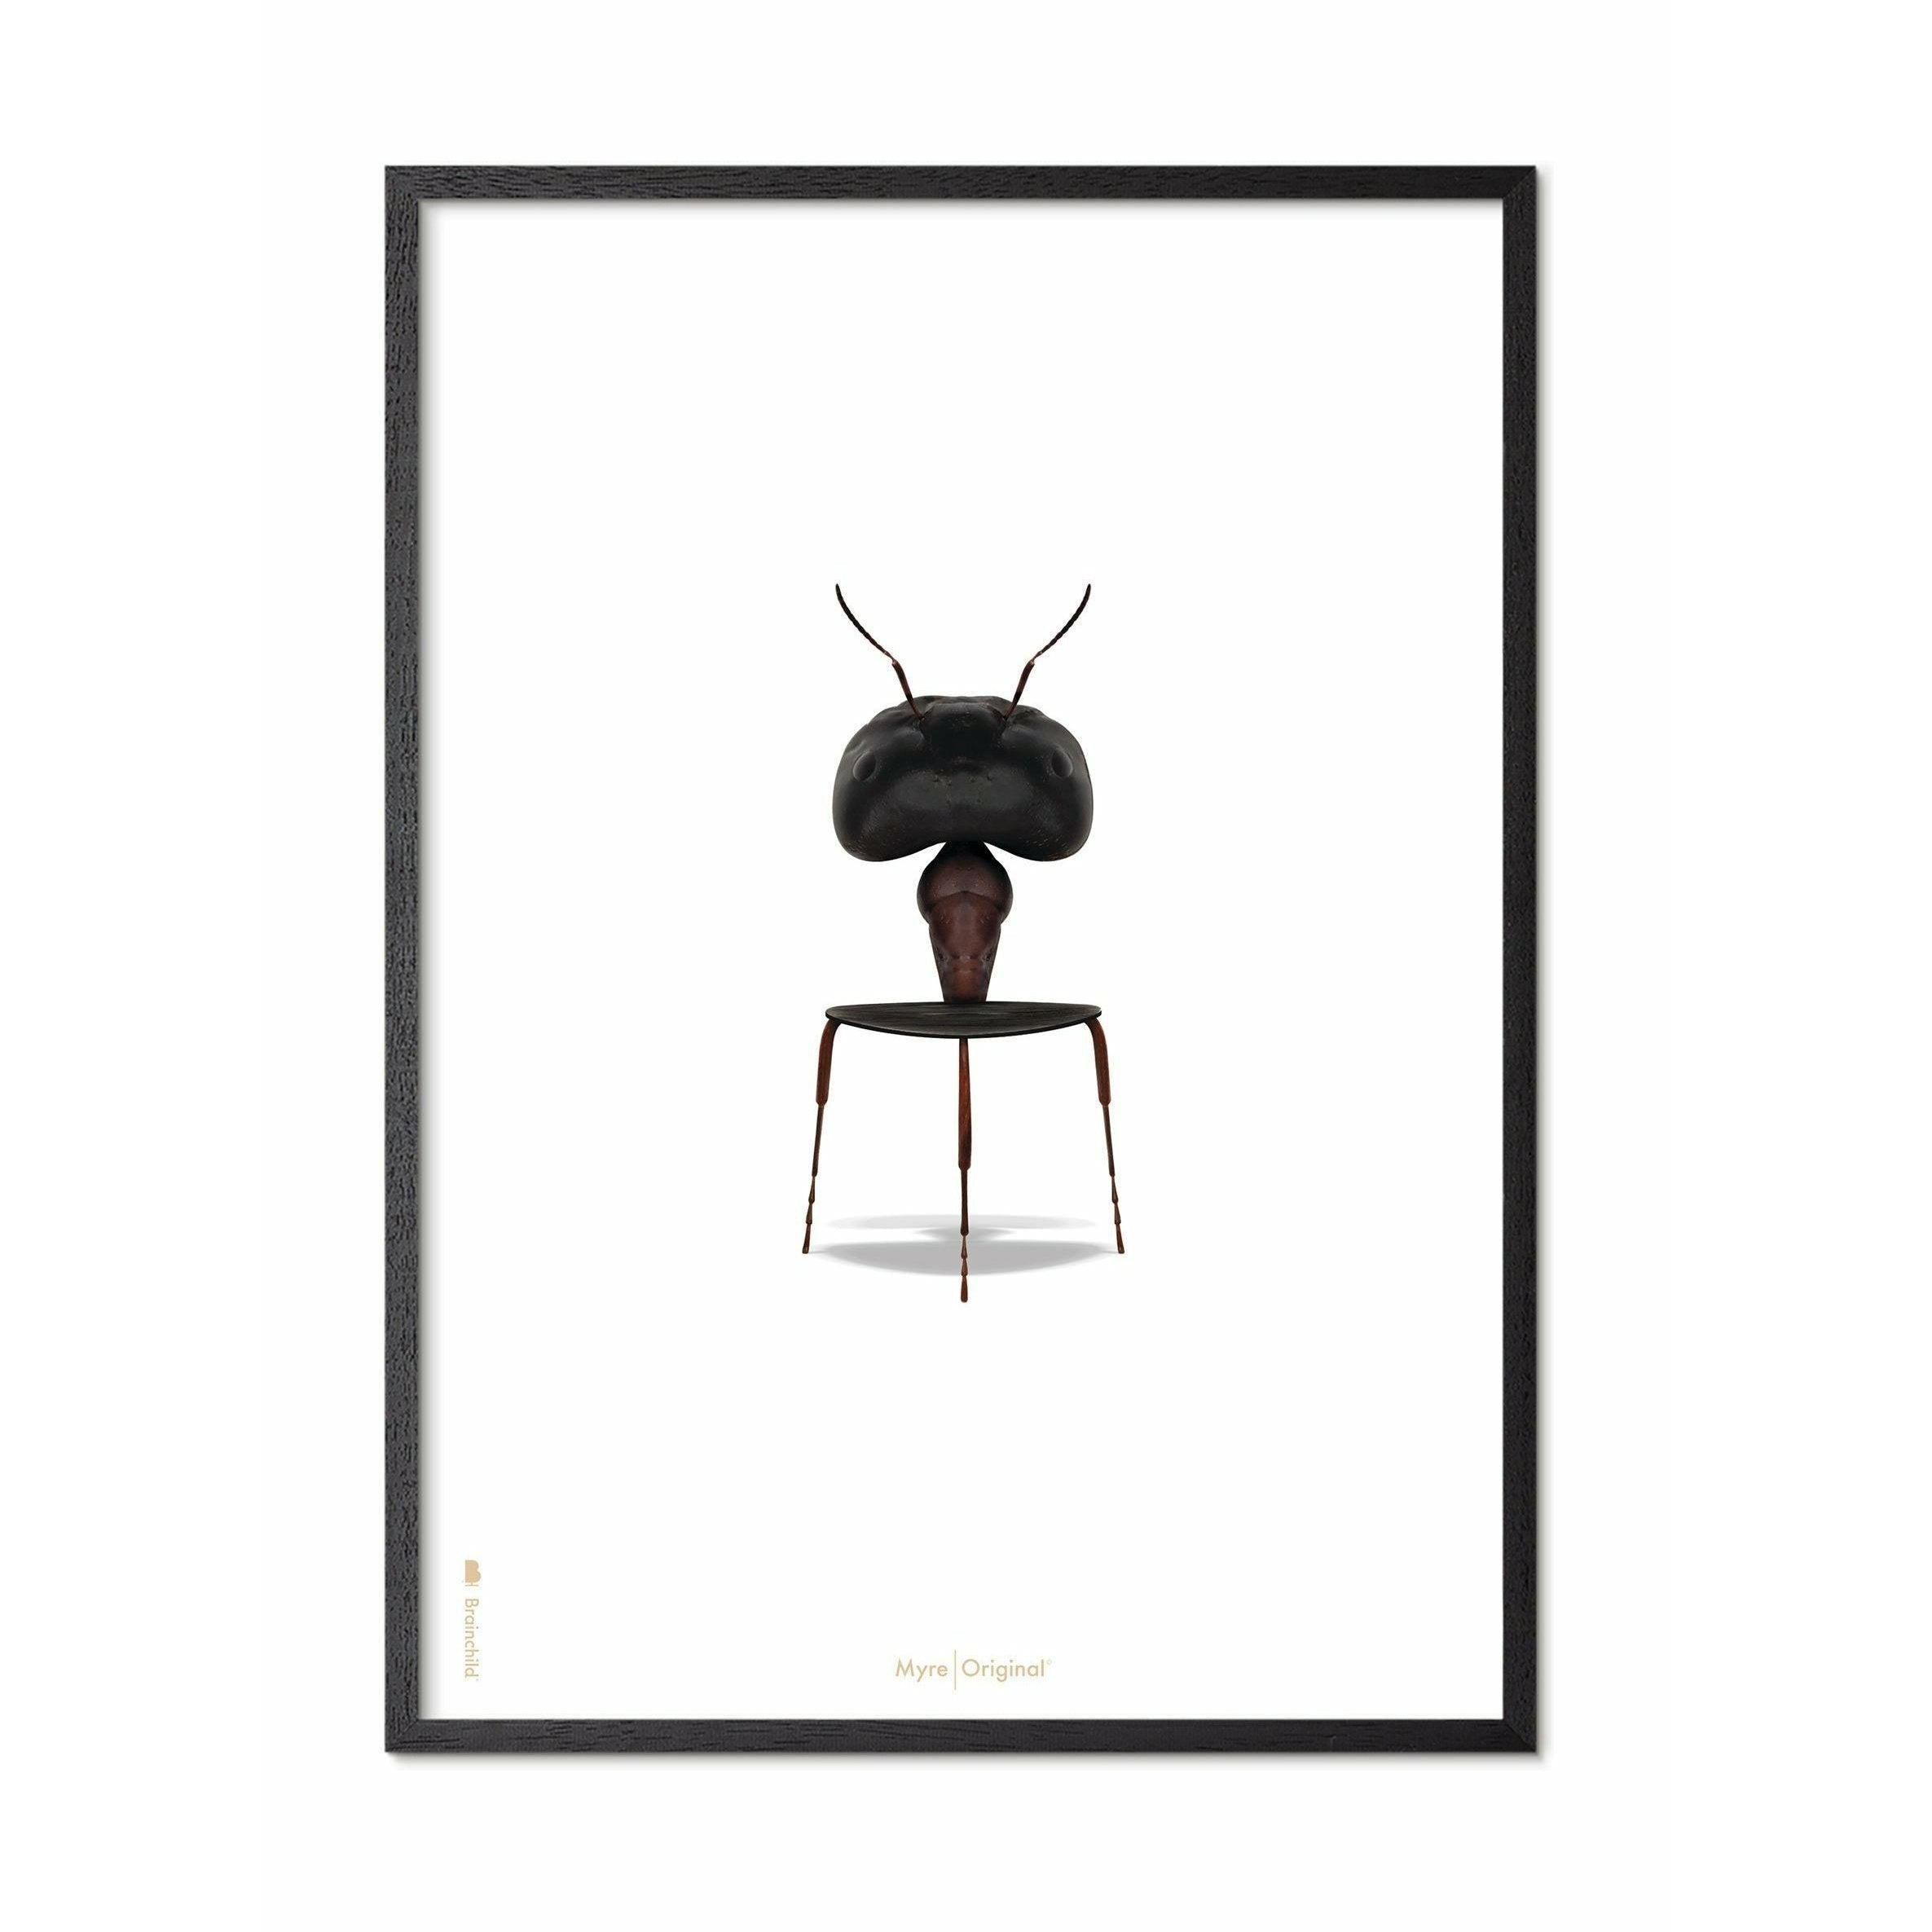 Póster clásico de hormigas de creación, marco en madera lacada negra 50x70 cm, fondo blanco